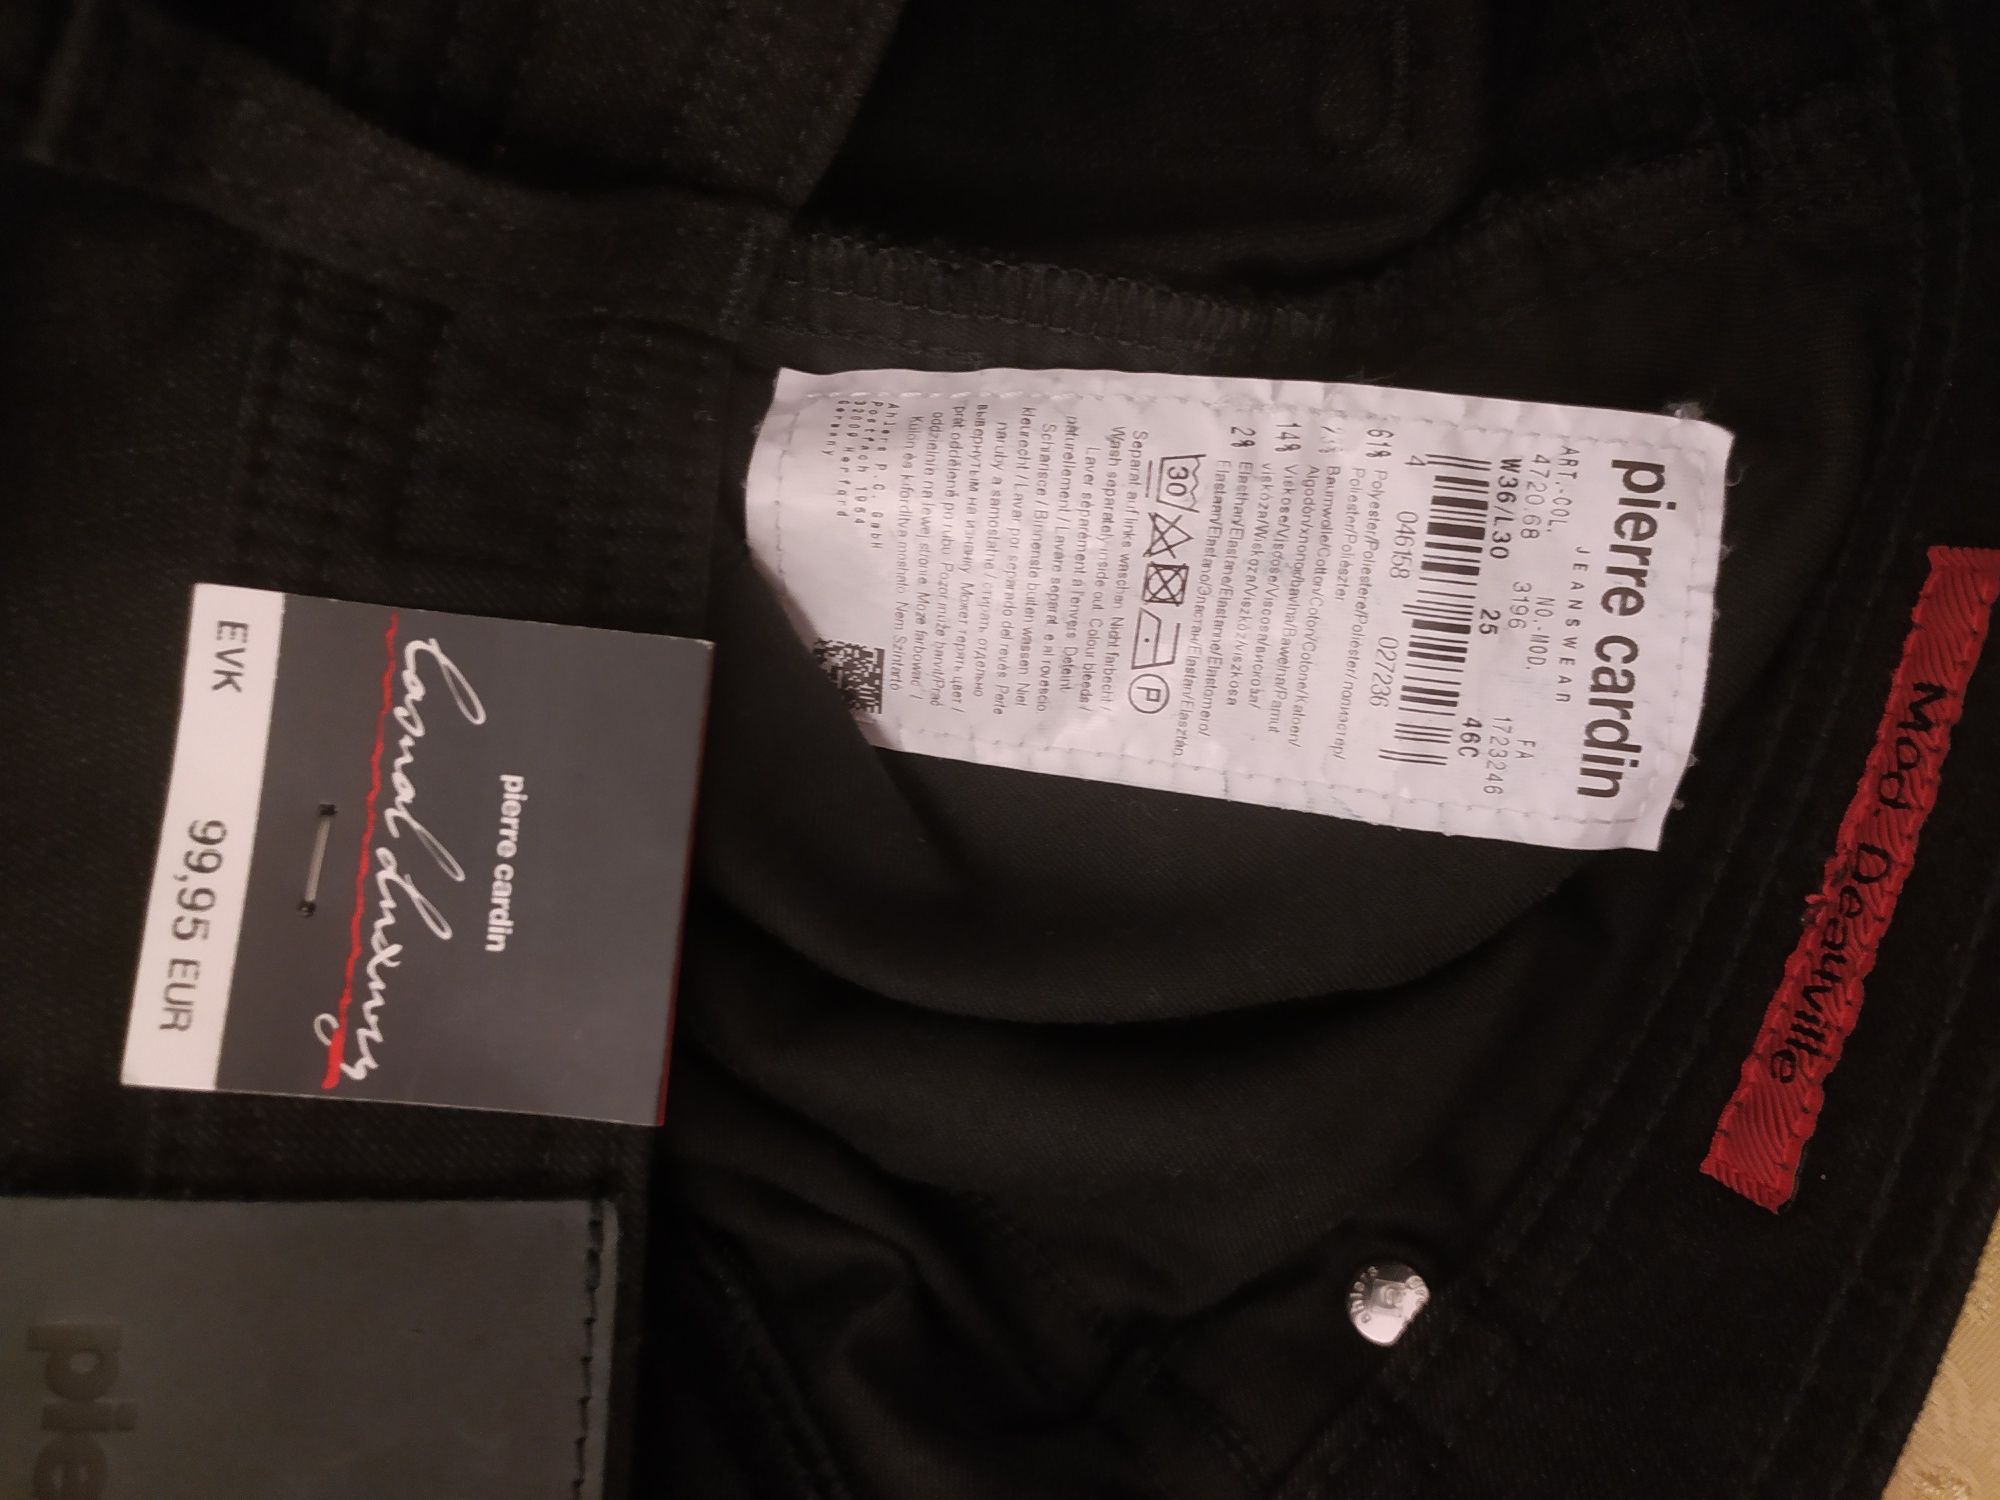 Spodnie męskie Pierre Cardin W 36 L30 czarne XL